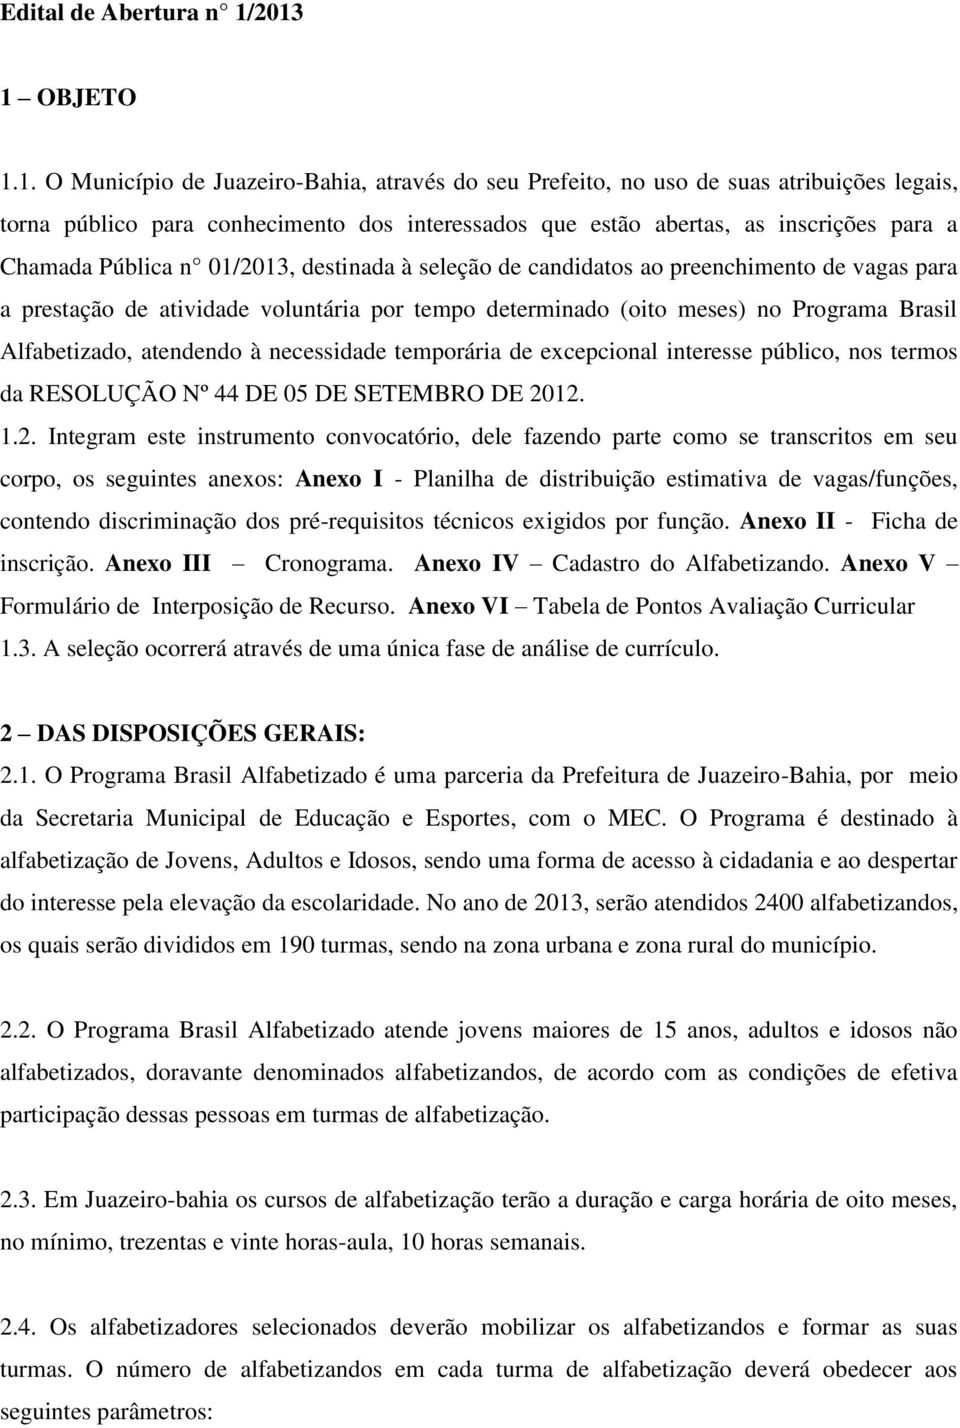 Chamada Pública n 01/2013, destinada à seleção de candidatos ao preenchimento de vagas para a prestação de atividade voluntária por tempo determinado (oito meses) no Programa Brasil Alfabetizado,